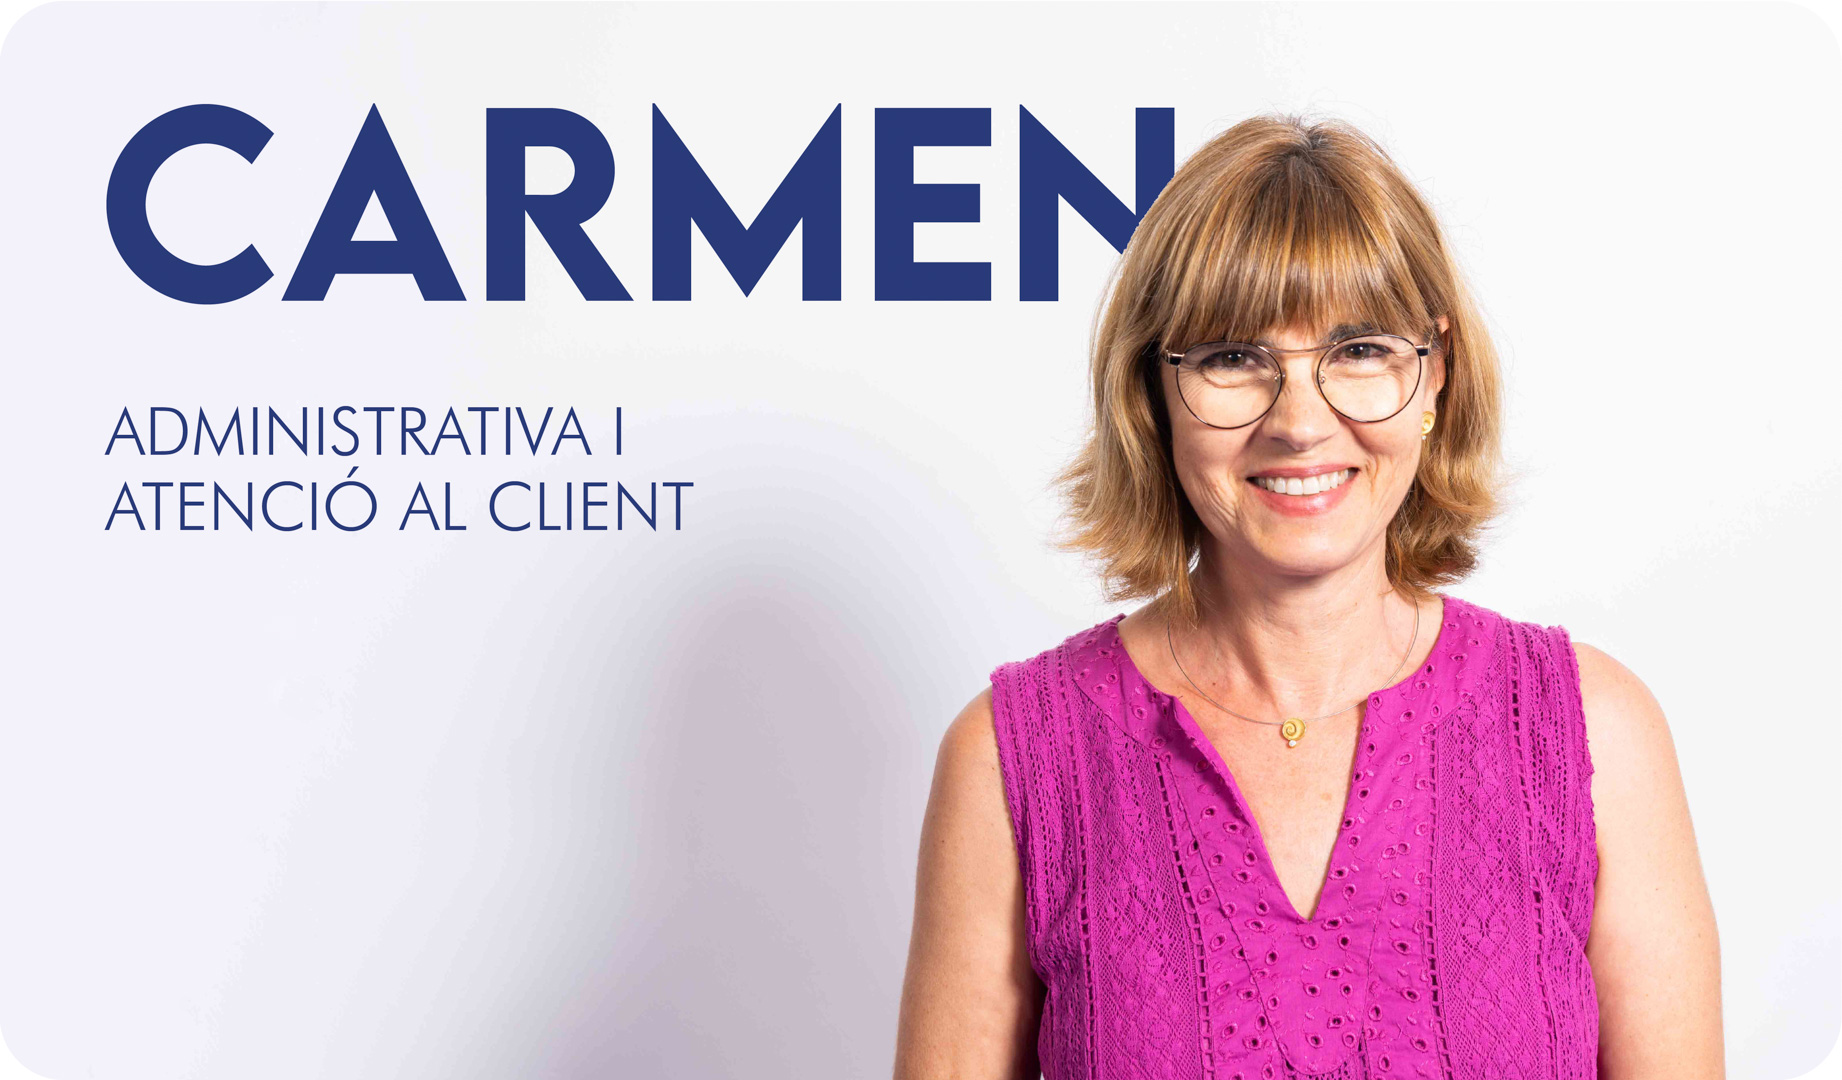 La Carmen, administrativa i atenció al client de l'Autoescola Victor.